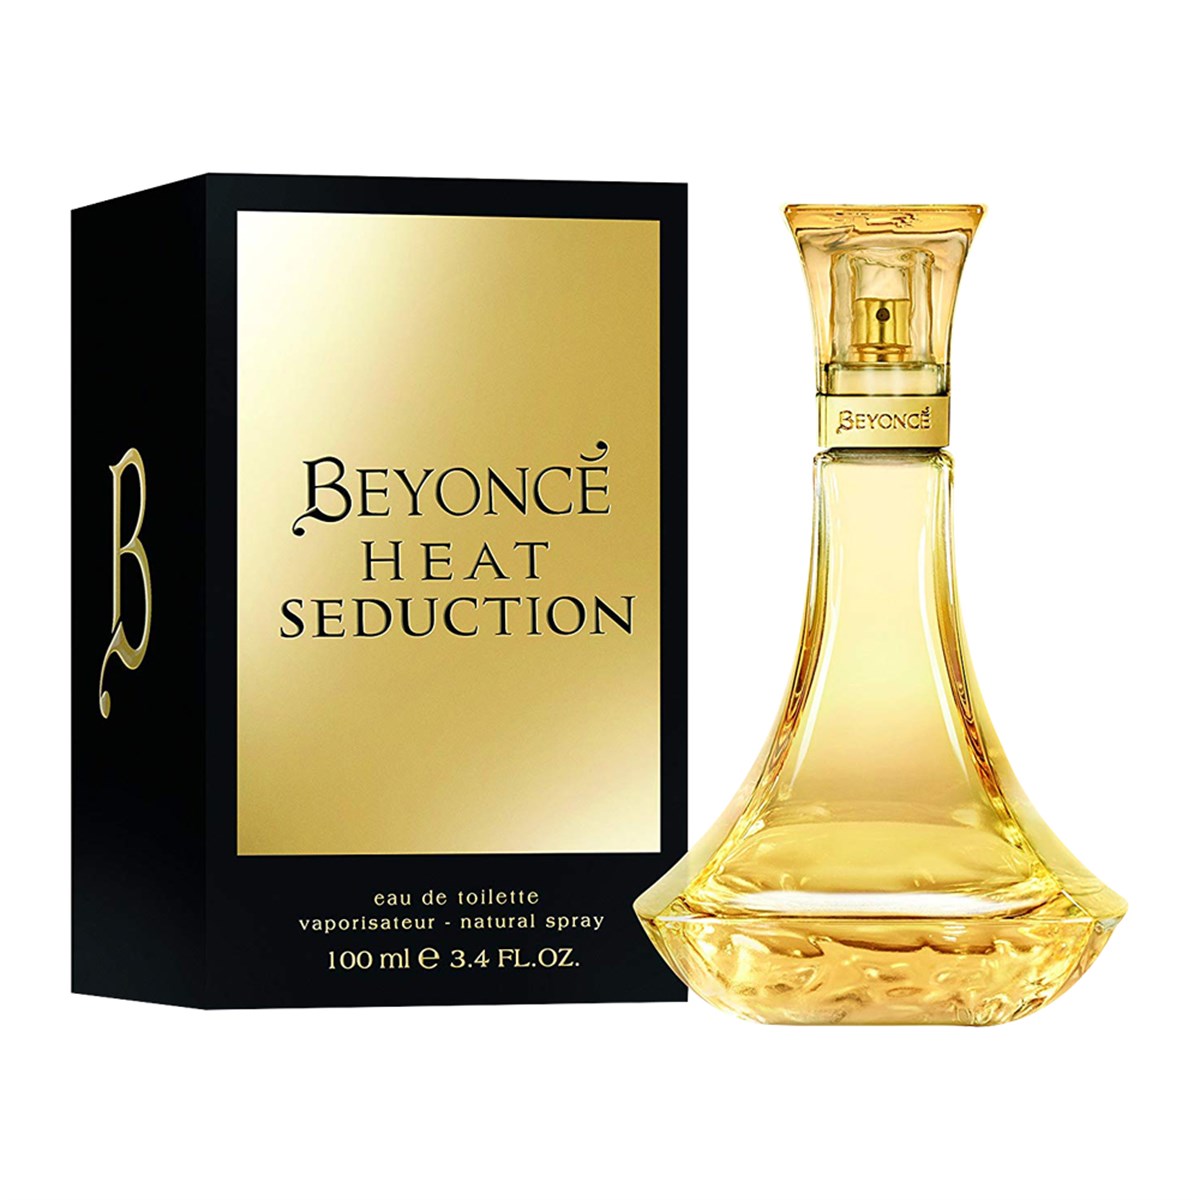 Beyonce Heat Seduction Edt Parfüm For Women 100ml - Platin